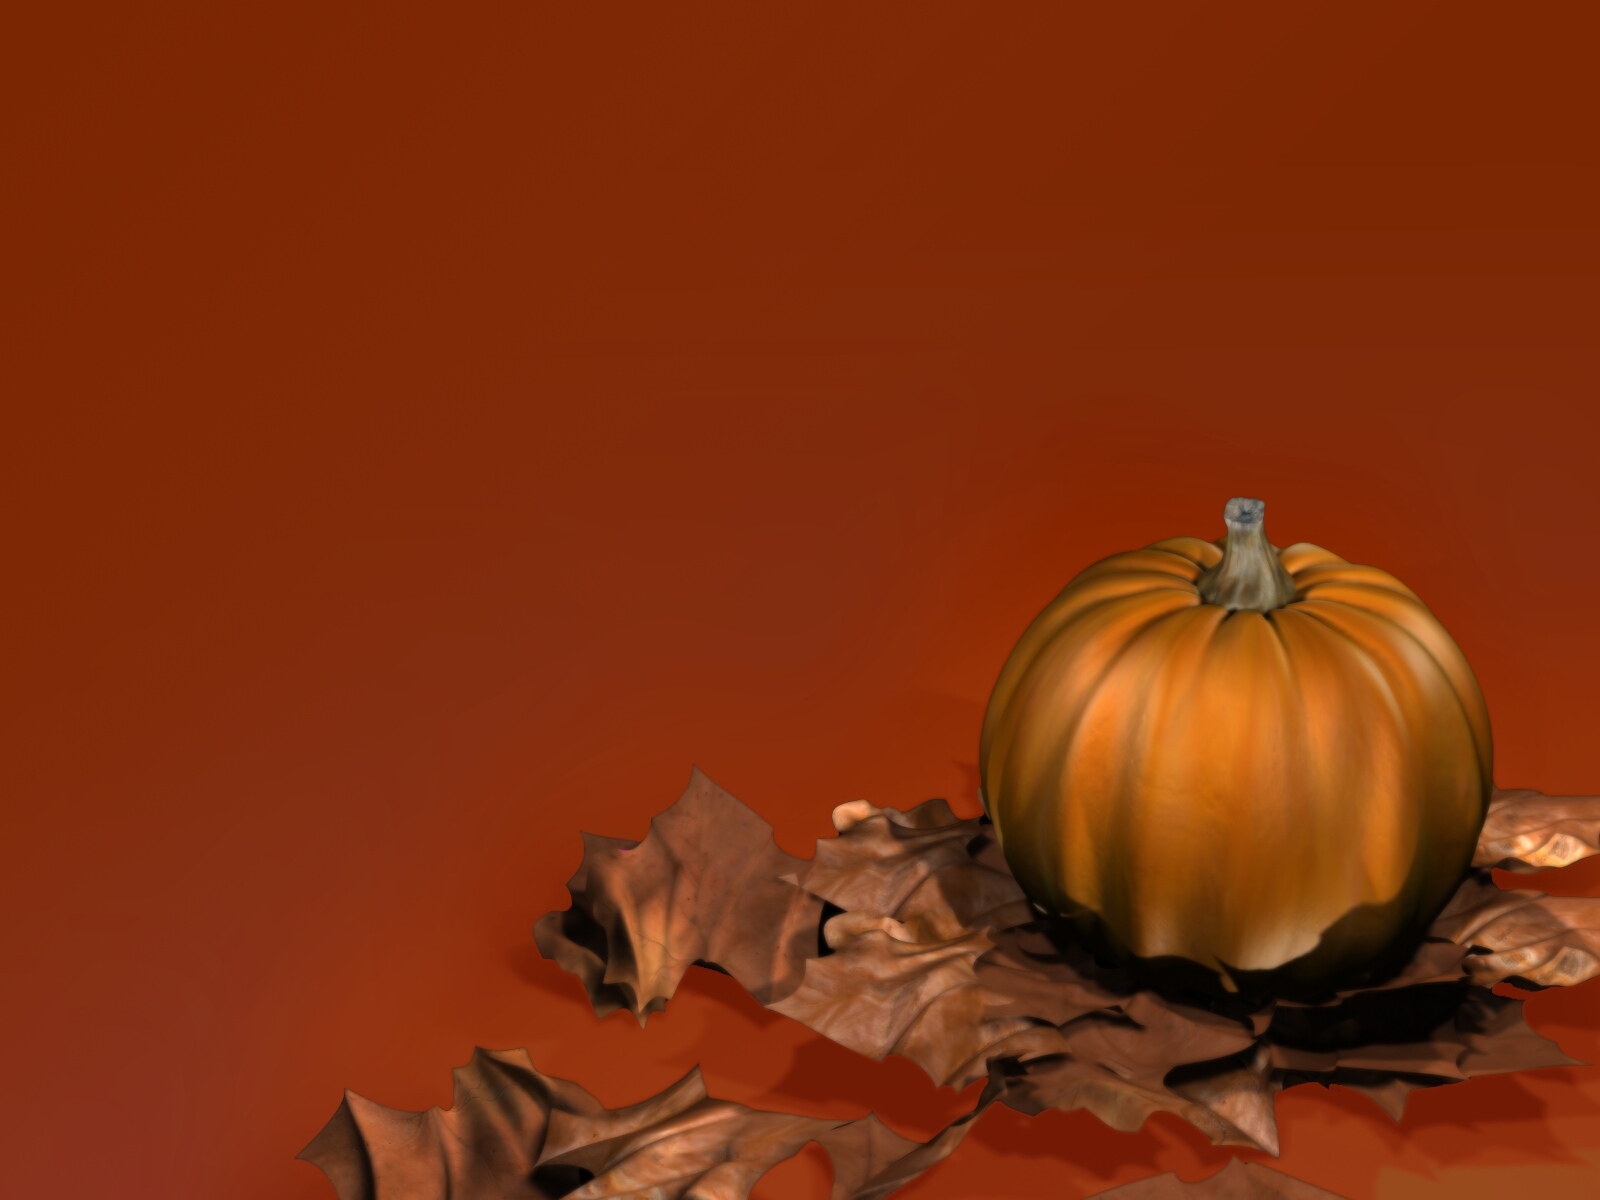 Pumpkin Nature Wallpaper Image Featuring Autumn